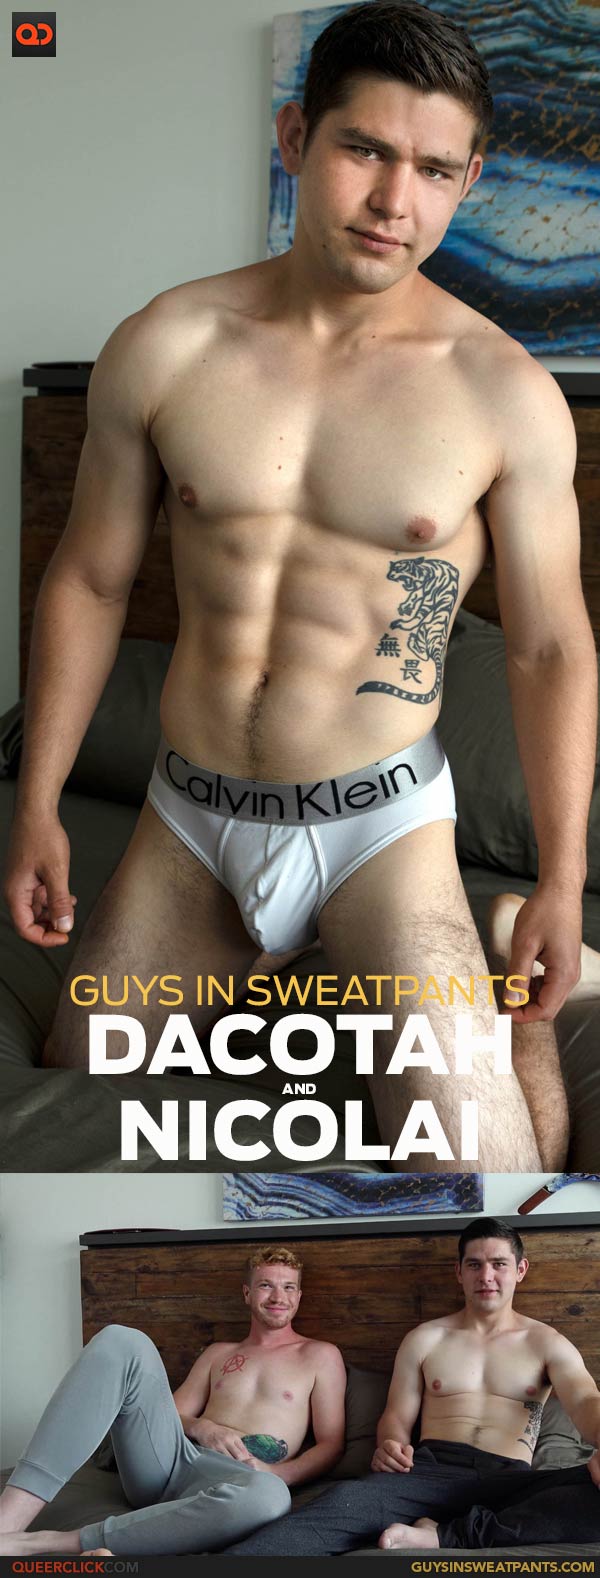 Guys in Sweatpants: Nicolai and Dacotah